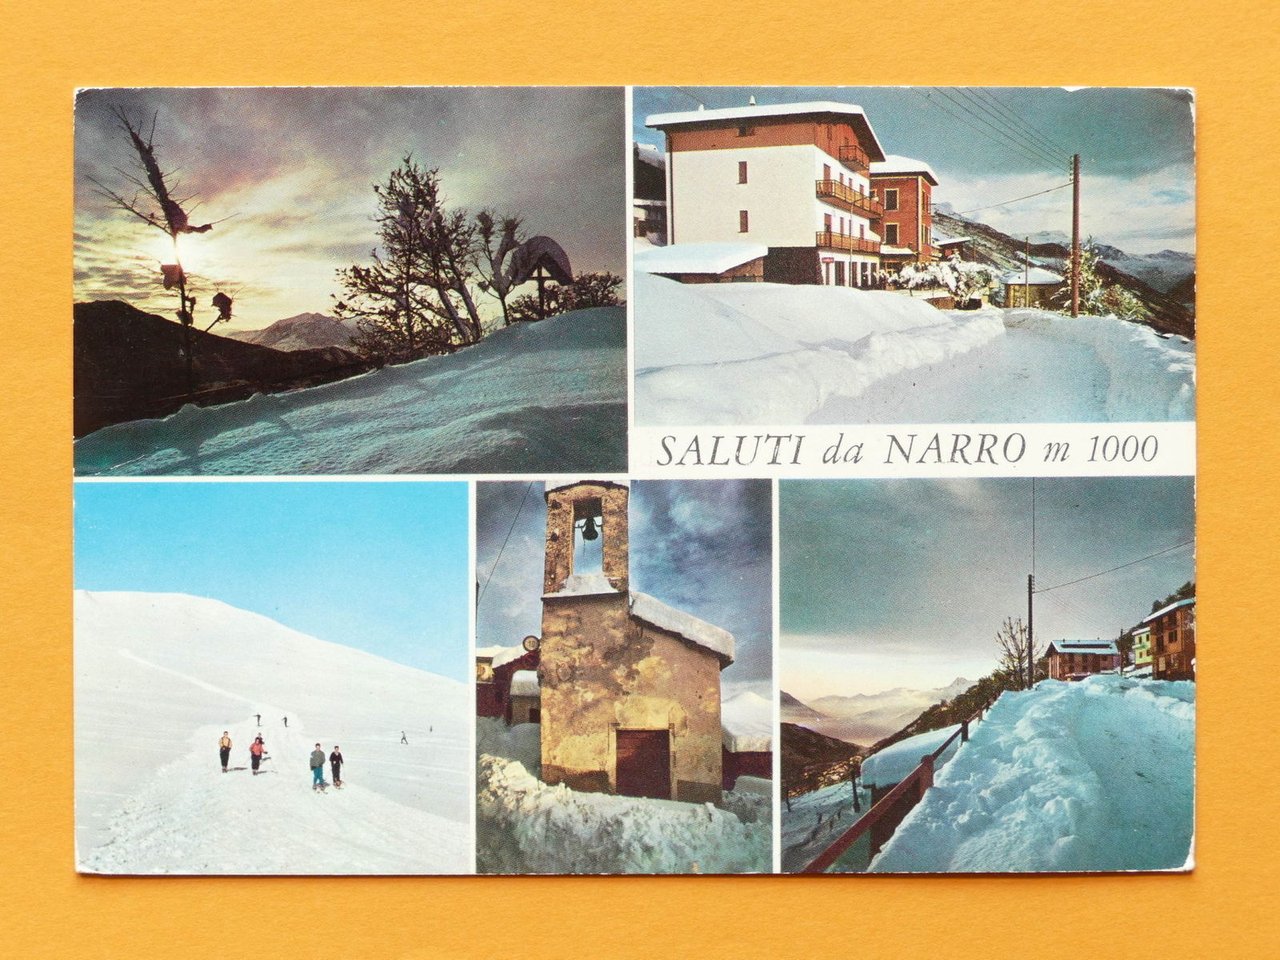 Cartolina Narro - Varie vedute - 1974.